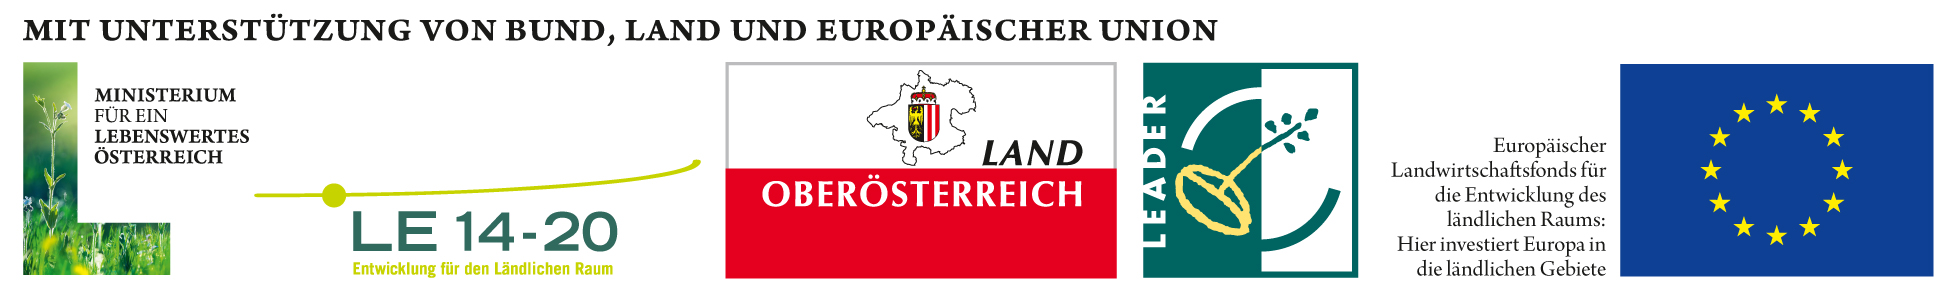 4_Bund_Leader_Land_EU